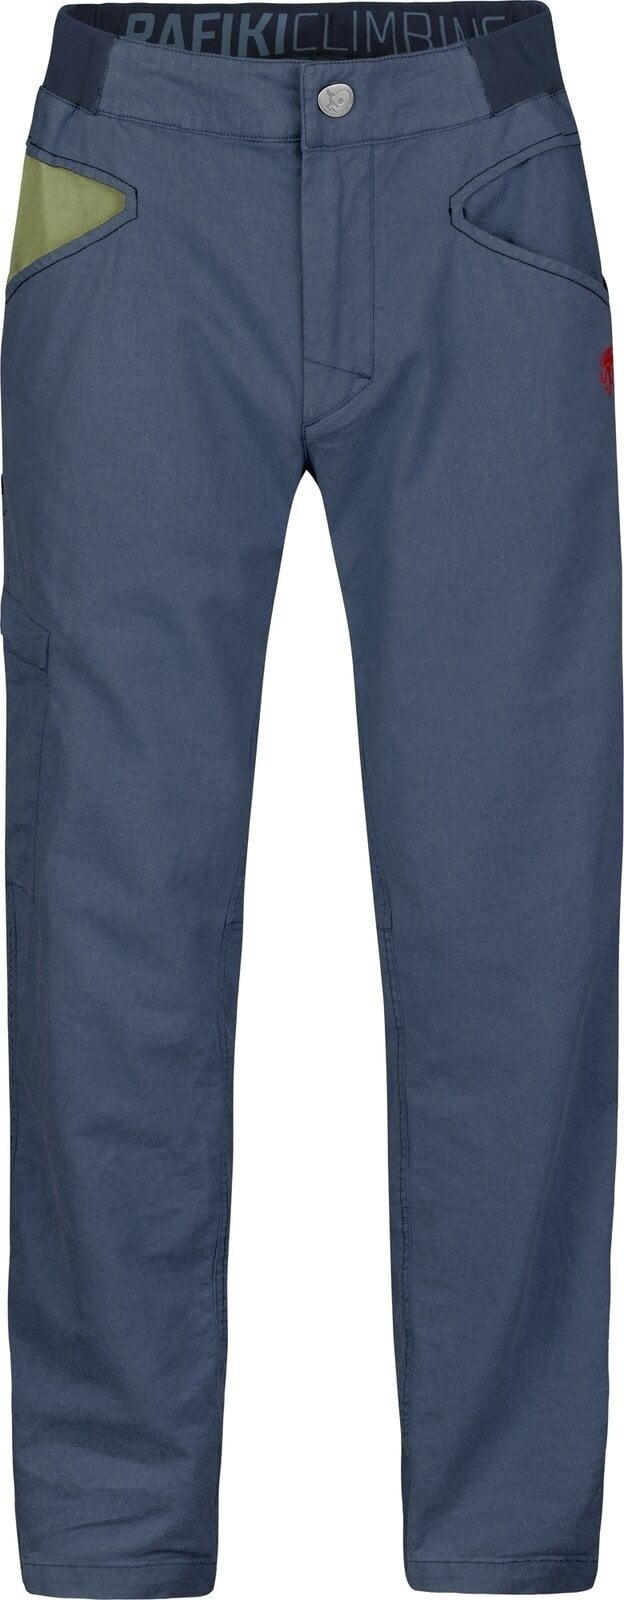 Outdoor Pants Rafiki Grip Man Pants India Ink 2XL Outdoor Pants